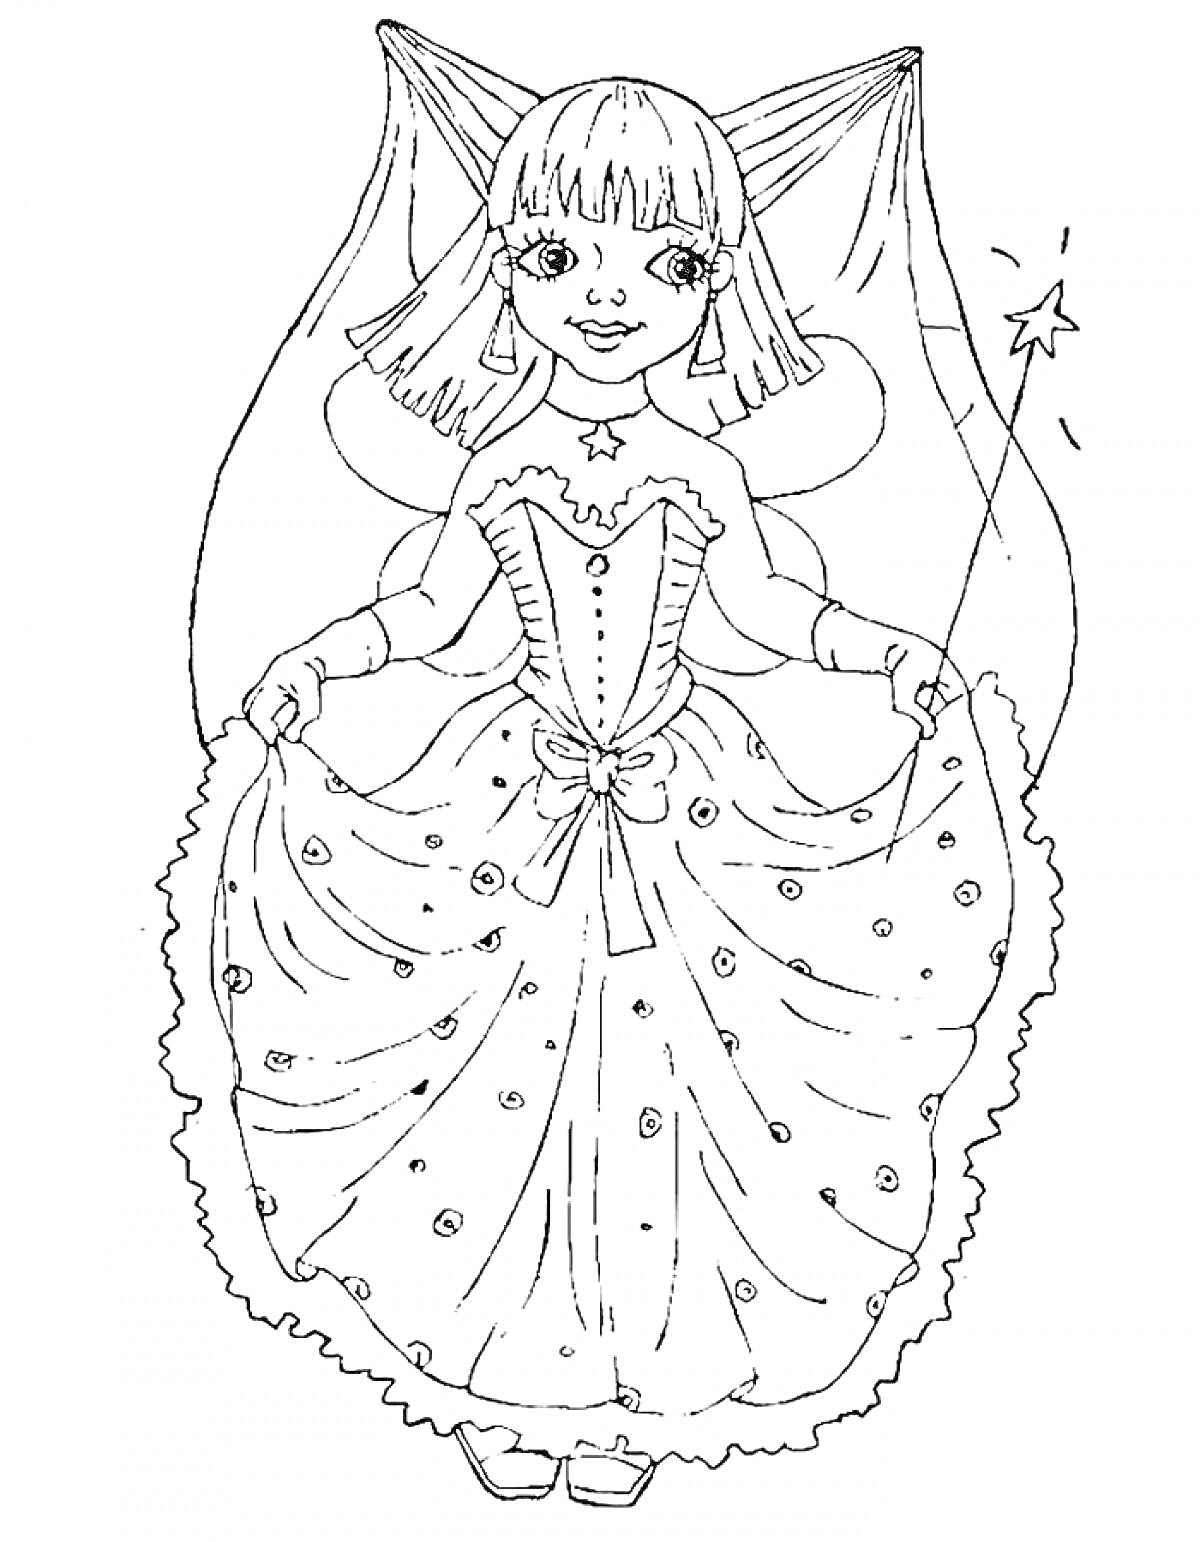 Раскраска Волшебница, девочка в платье с крыльями, держащая волшебную палочку